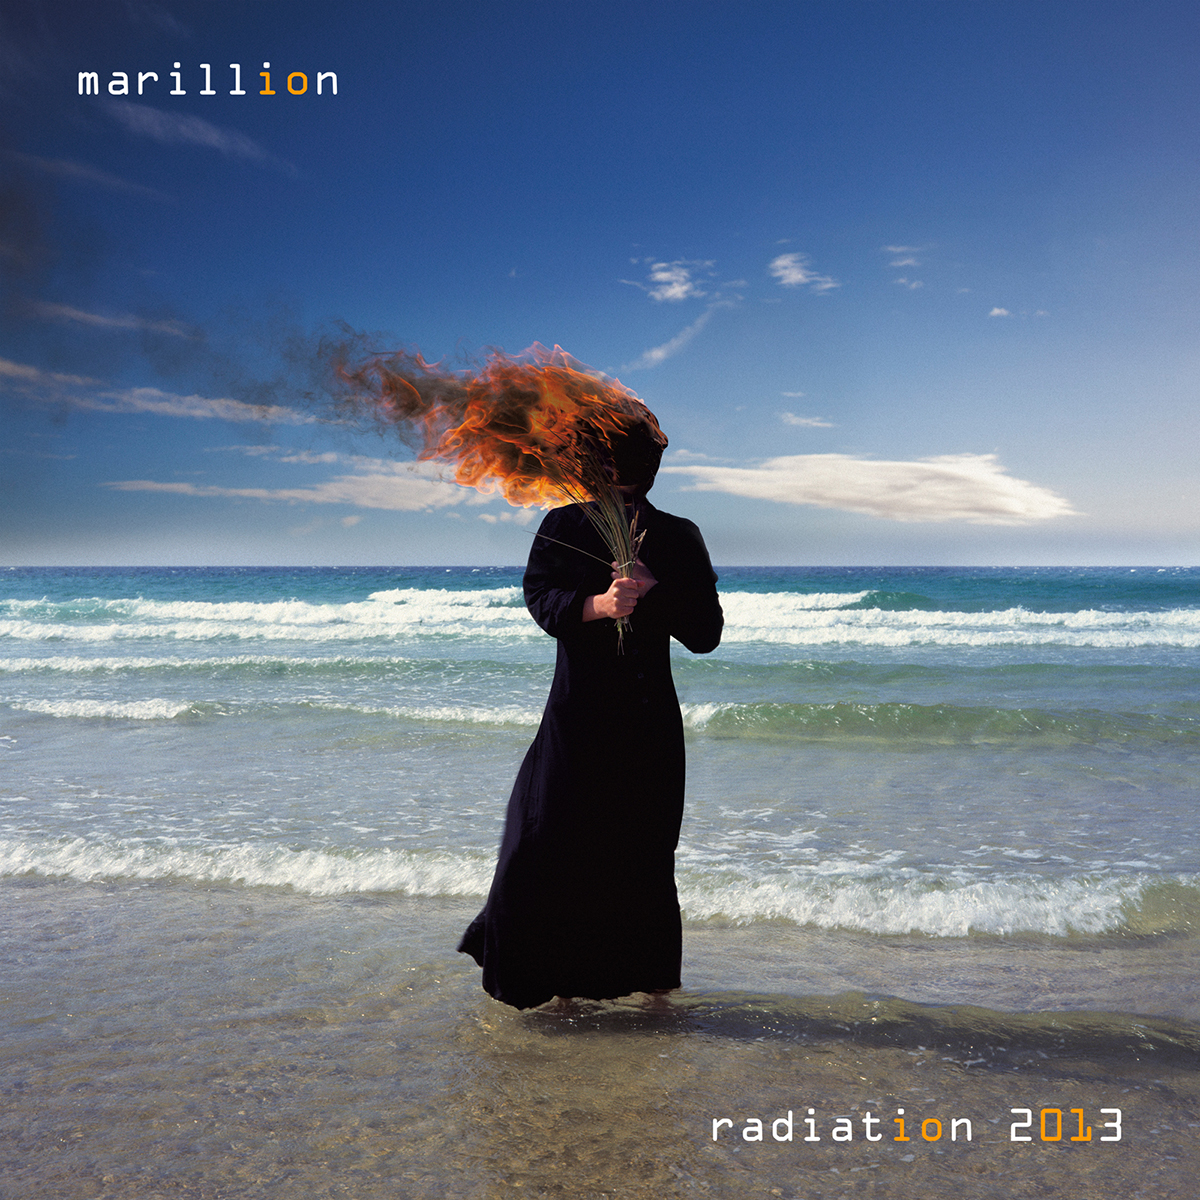 Radiation 2013 Album Download 320kbps